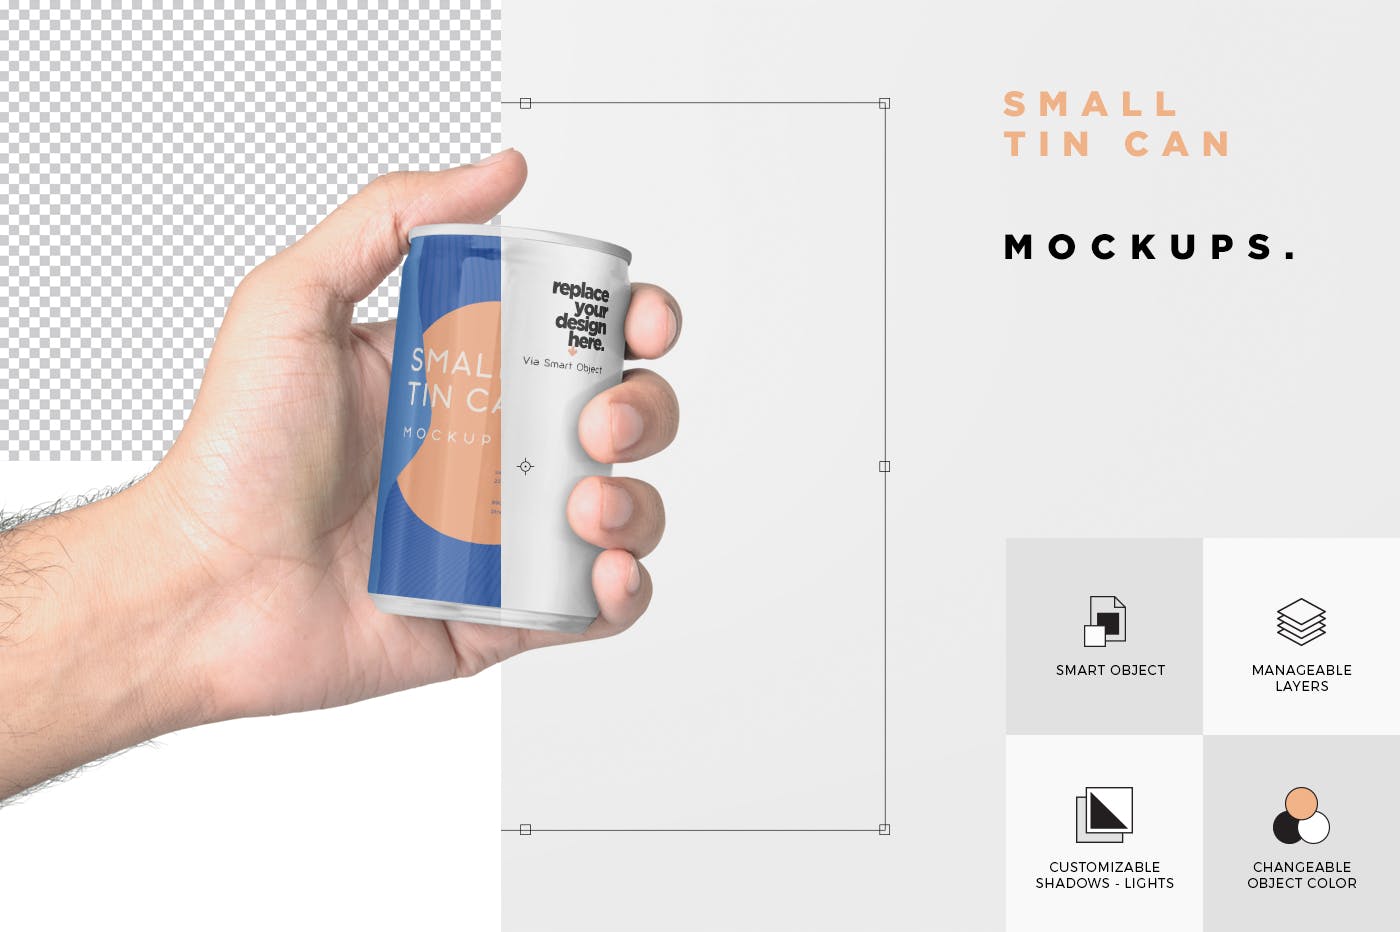 小型饮料易拉罐外观设计预览样机 5 Small Tin Can Mockups插图(6)